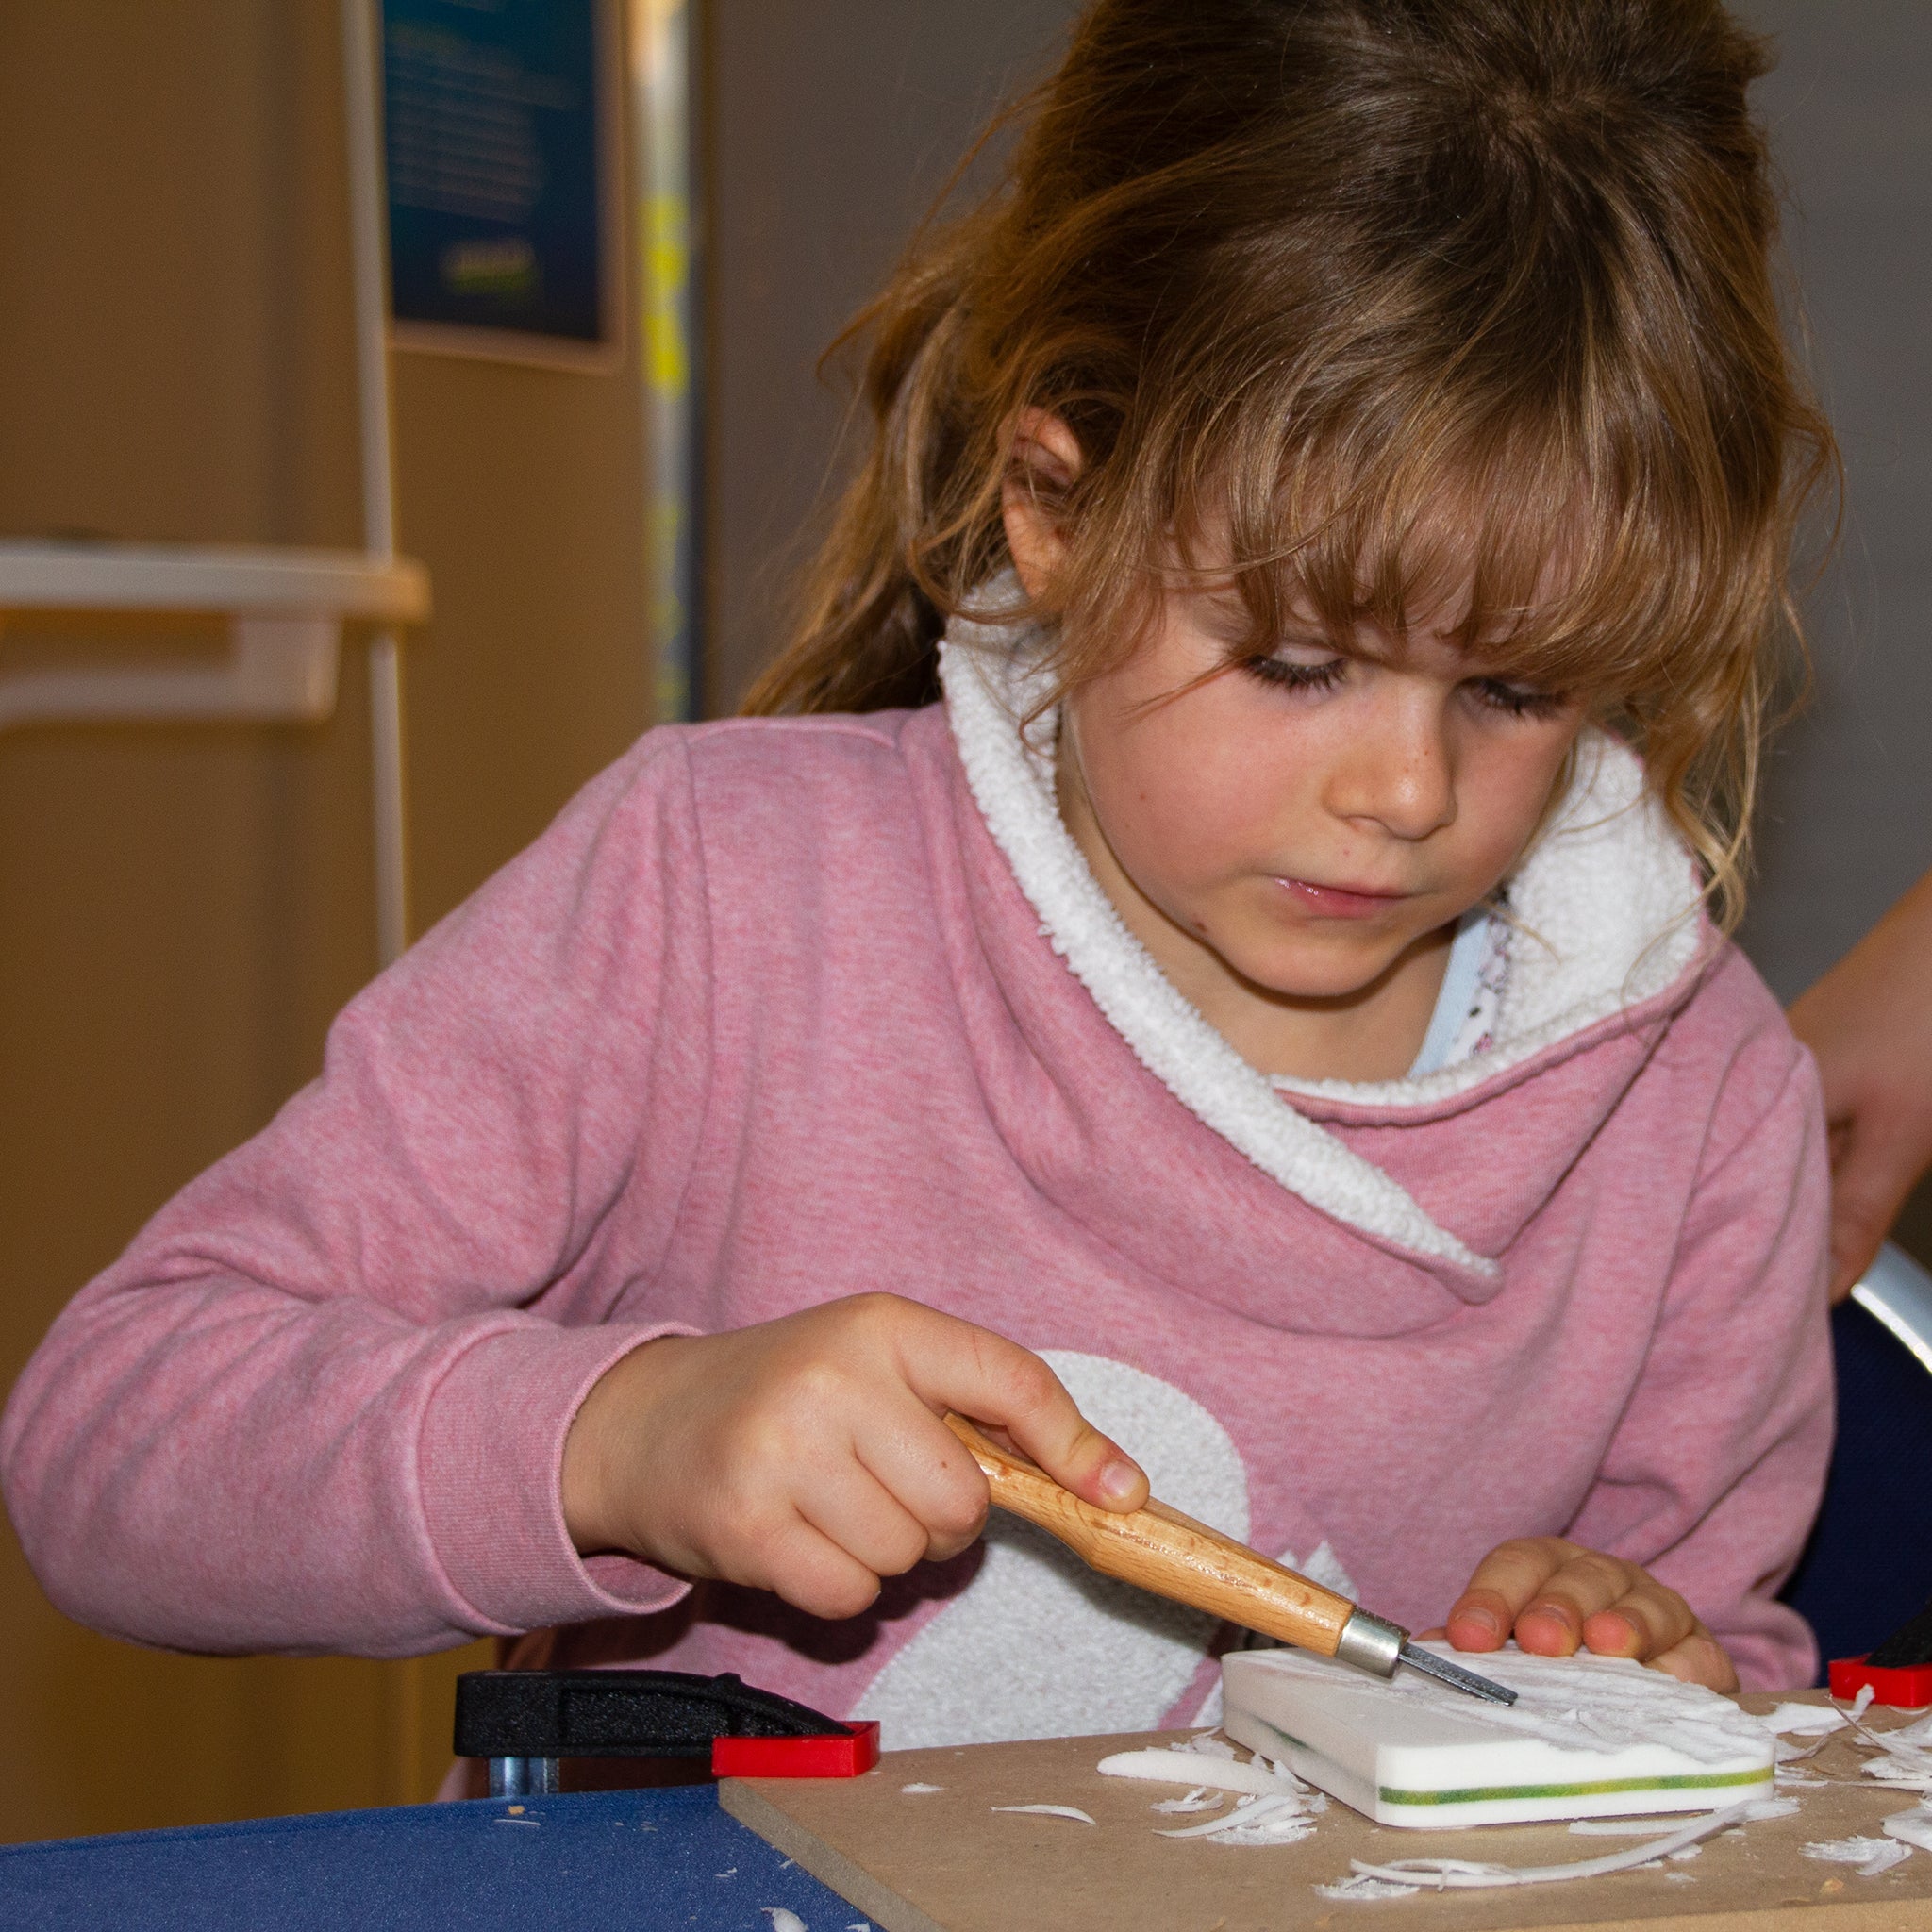 Ein etwa 6-jähriges Mädchen schnitzt mit einem Hohlbeitel einen Block aus Kartoffelholz. Sie ist Anfängerin und lernt das Schnitzen, indem sie das weiße Material vorsichtig vom Block abschnitzt.